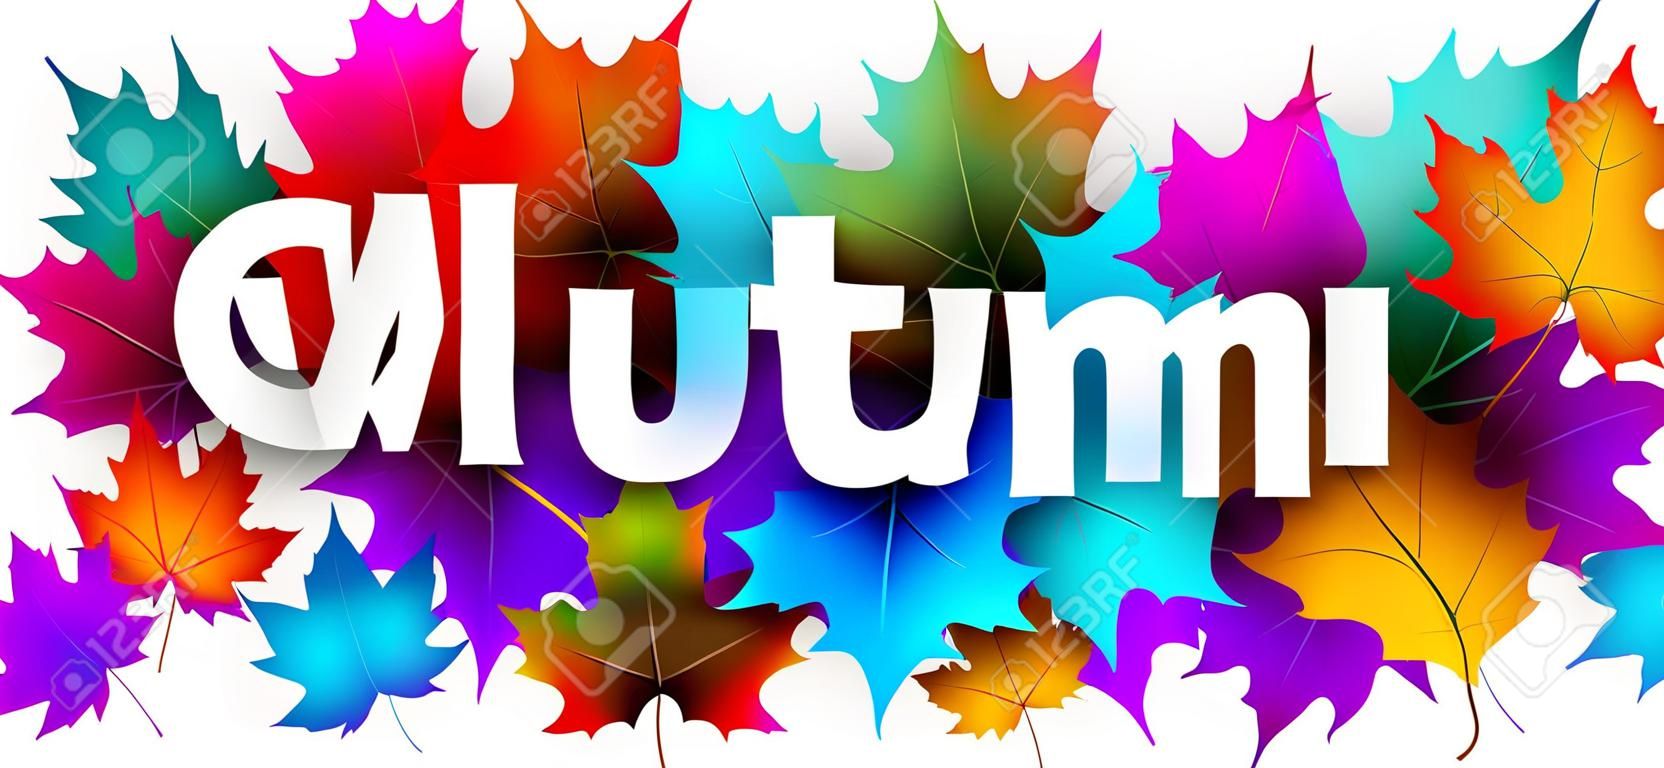 Sinal de boas-vindas de outono com folhas coloridas de bordo. Fundo do vetor.